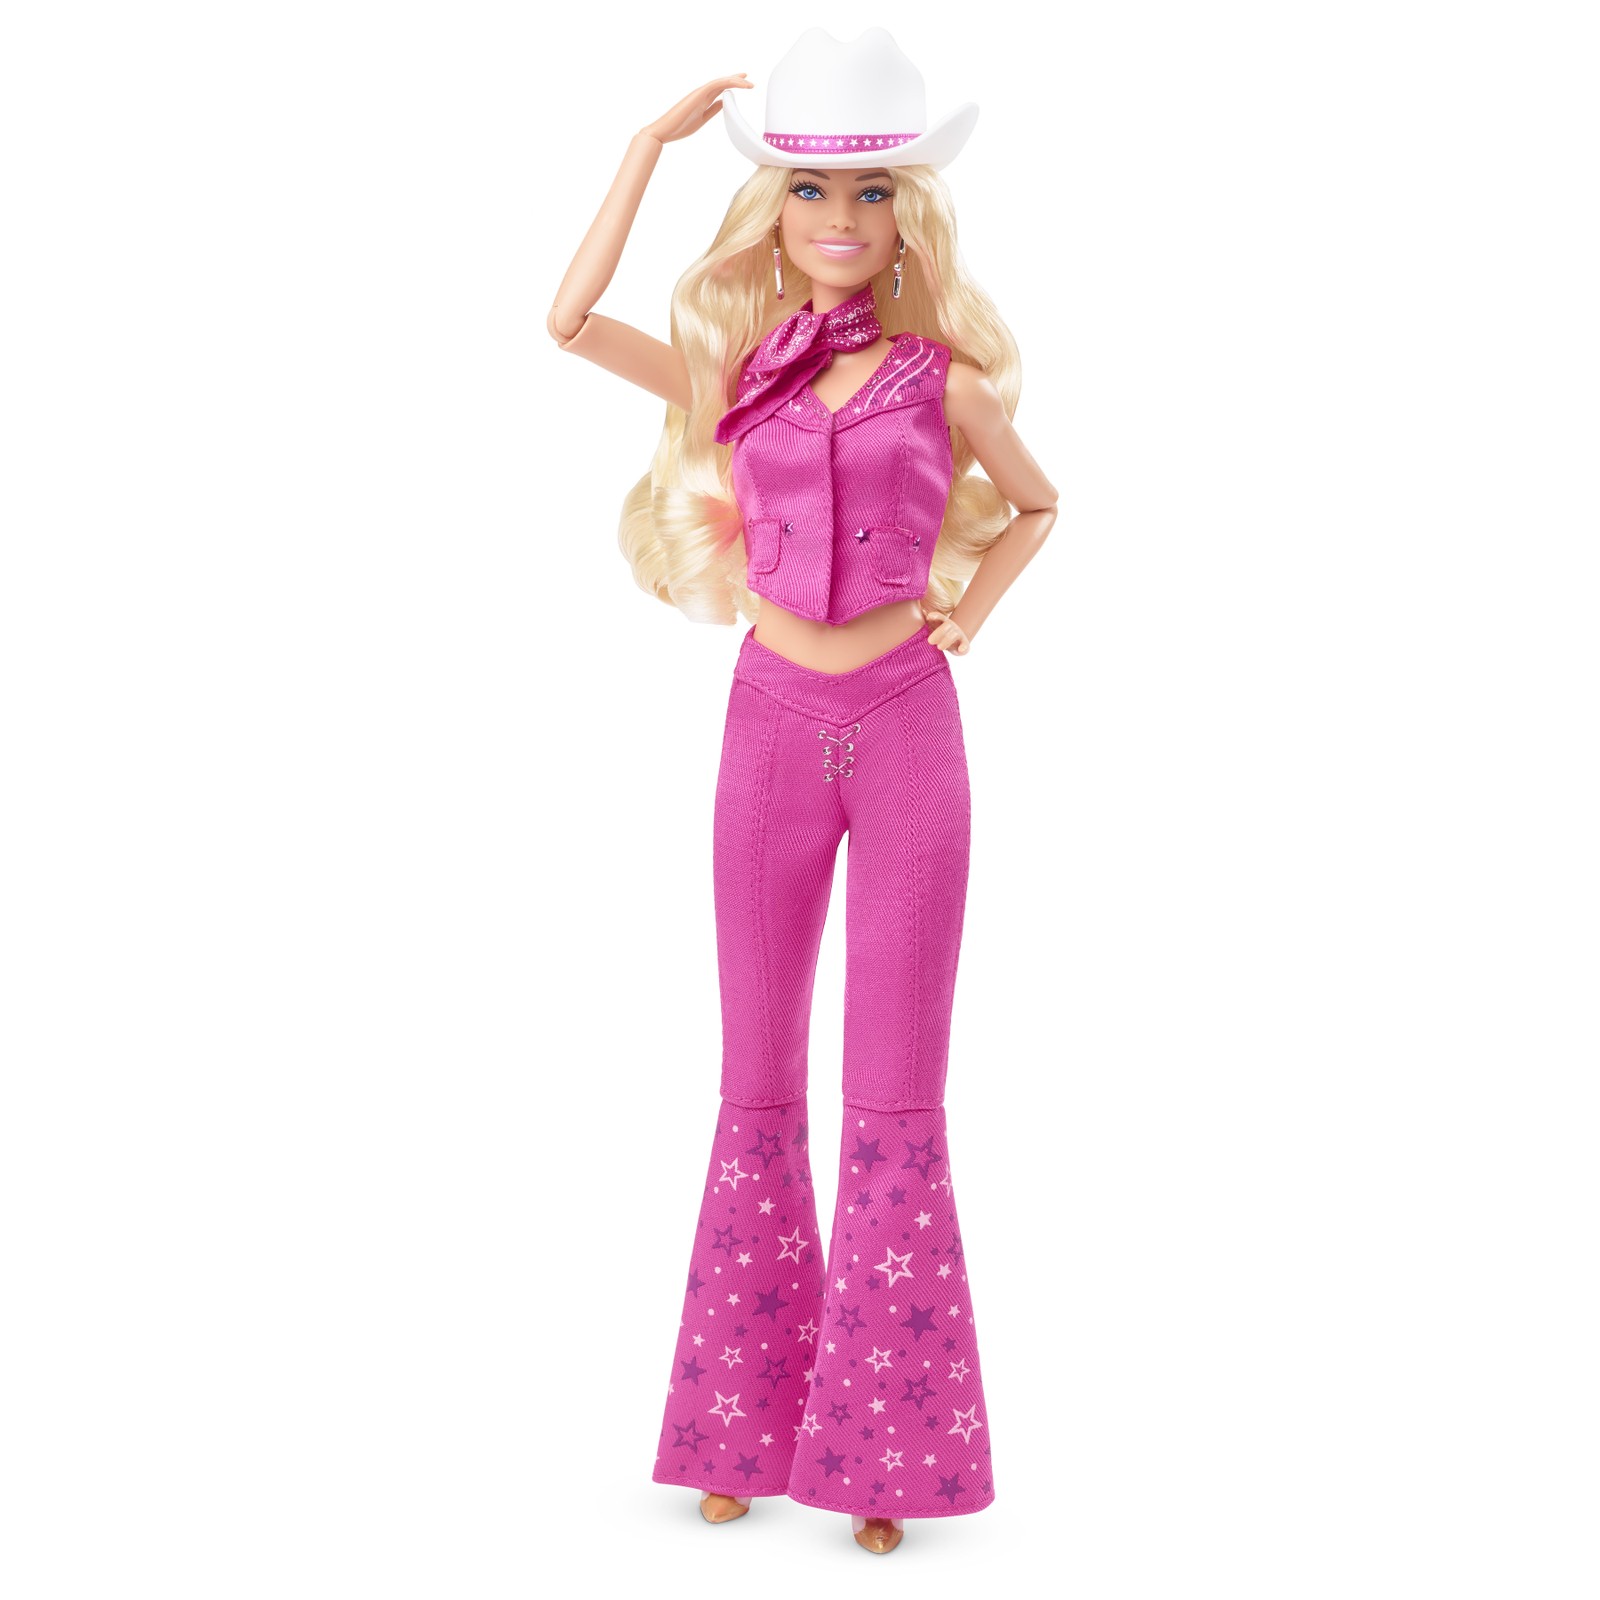 Barbie com look western inspirada no filme 'Barbie', com Margot Robbie — Foto: Divulgação